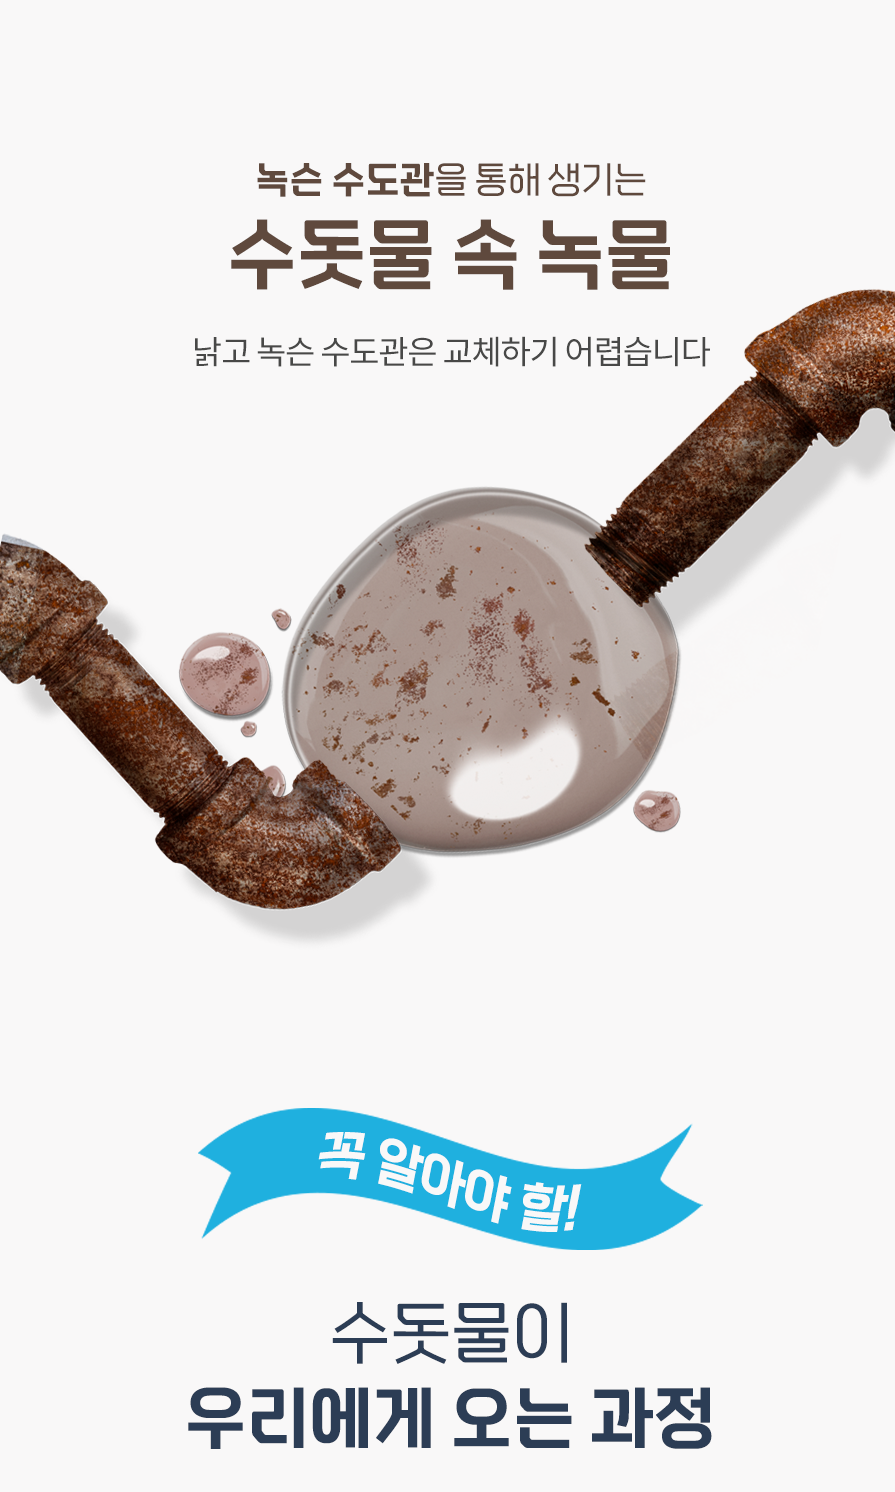 韓國食品-[닥터피엘] 세면대 프리미엄 기본세트